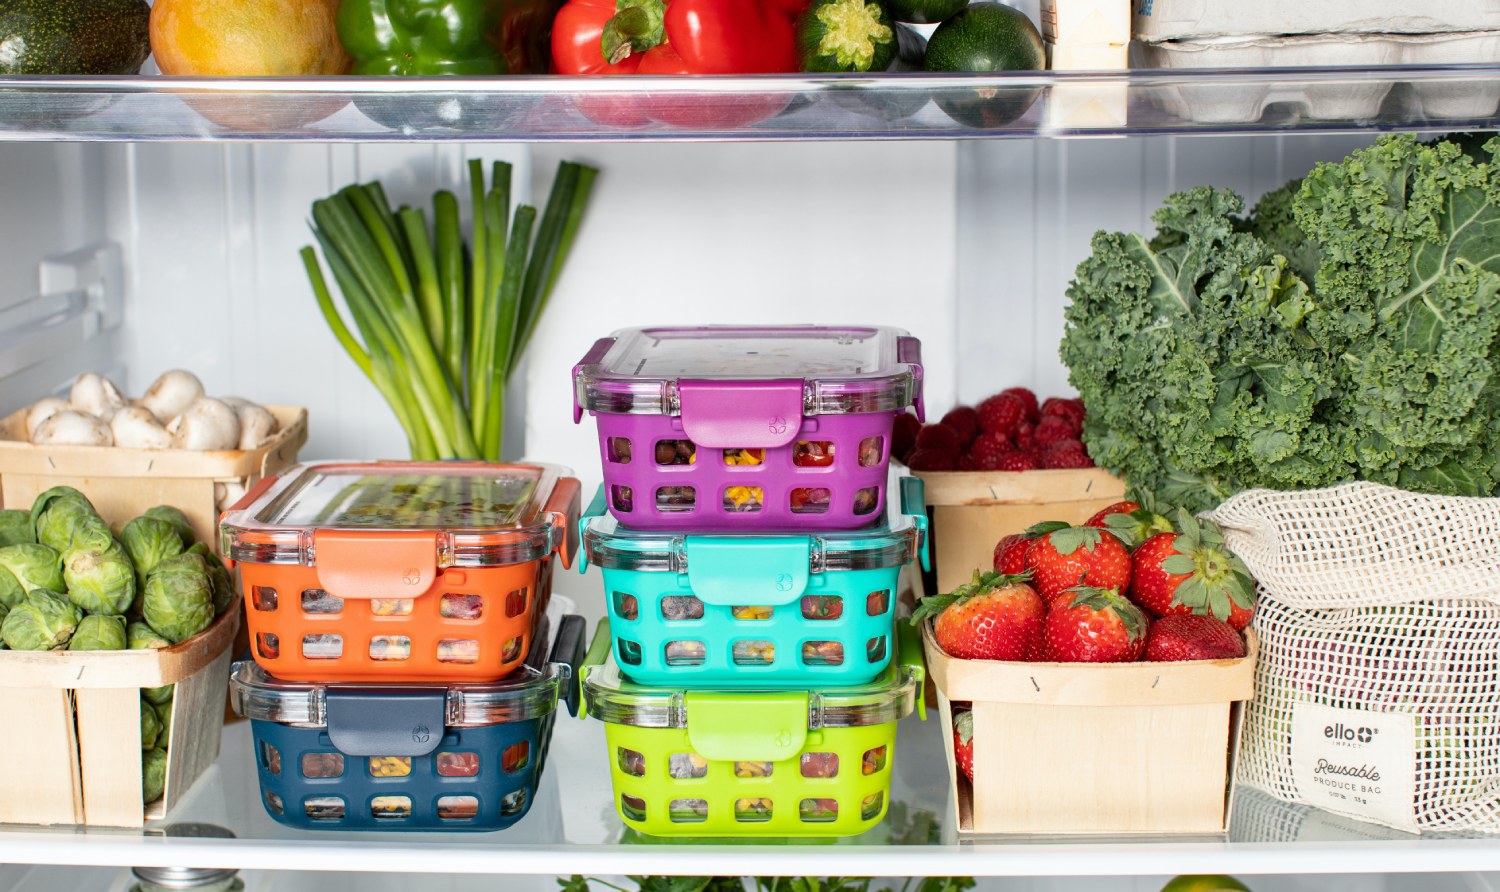 Groenten en fruit bewaren: wat hoort er nou eigenlijk in de koelkast?